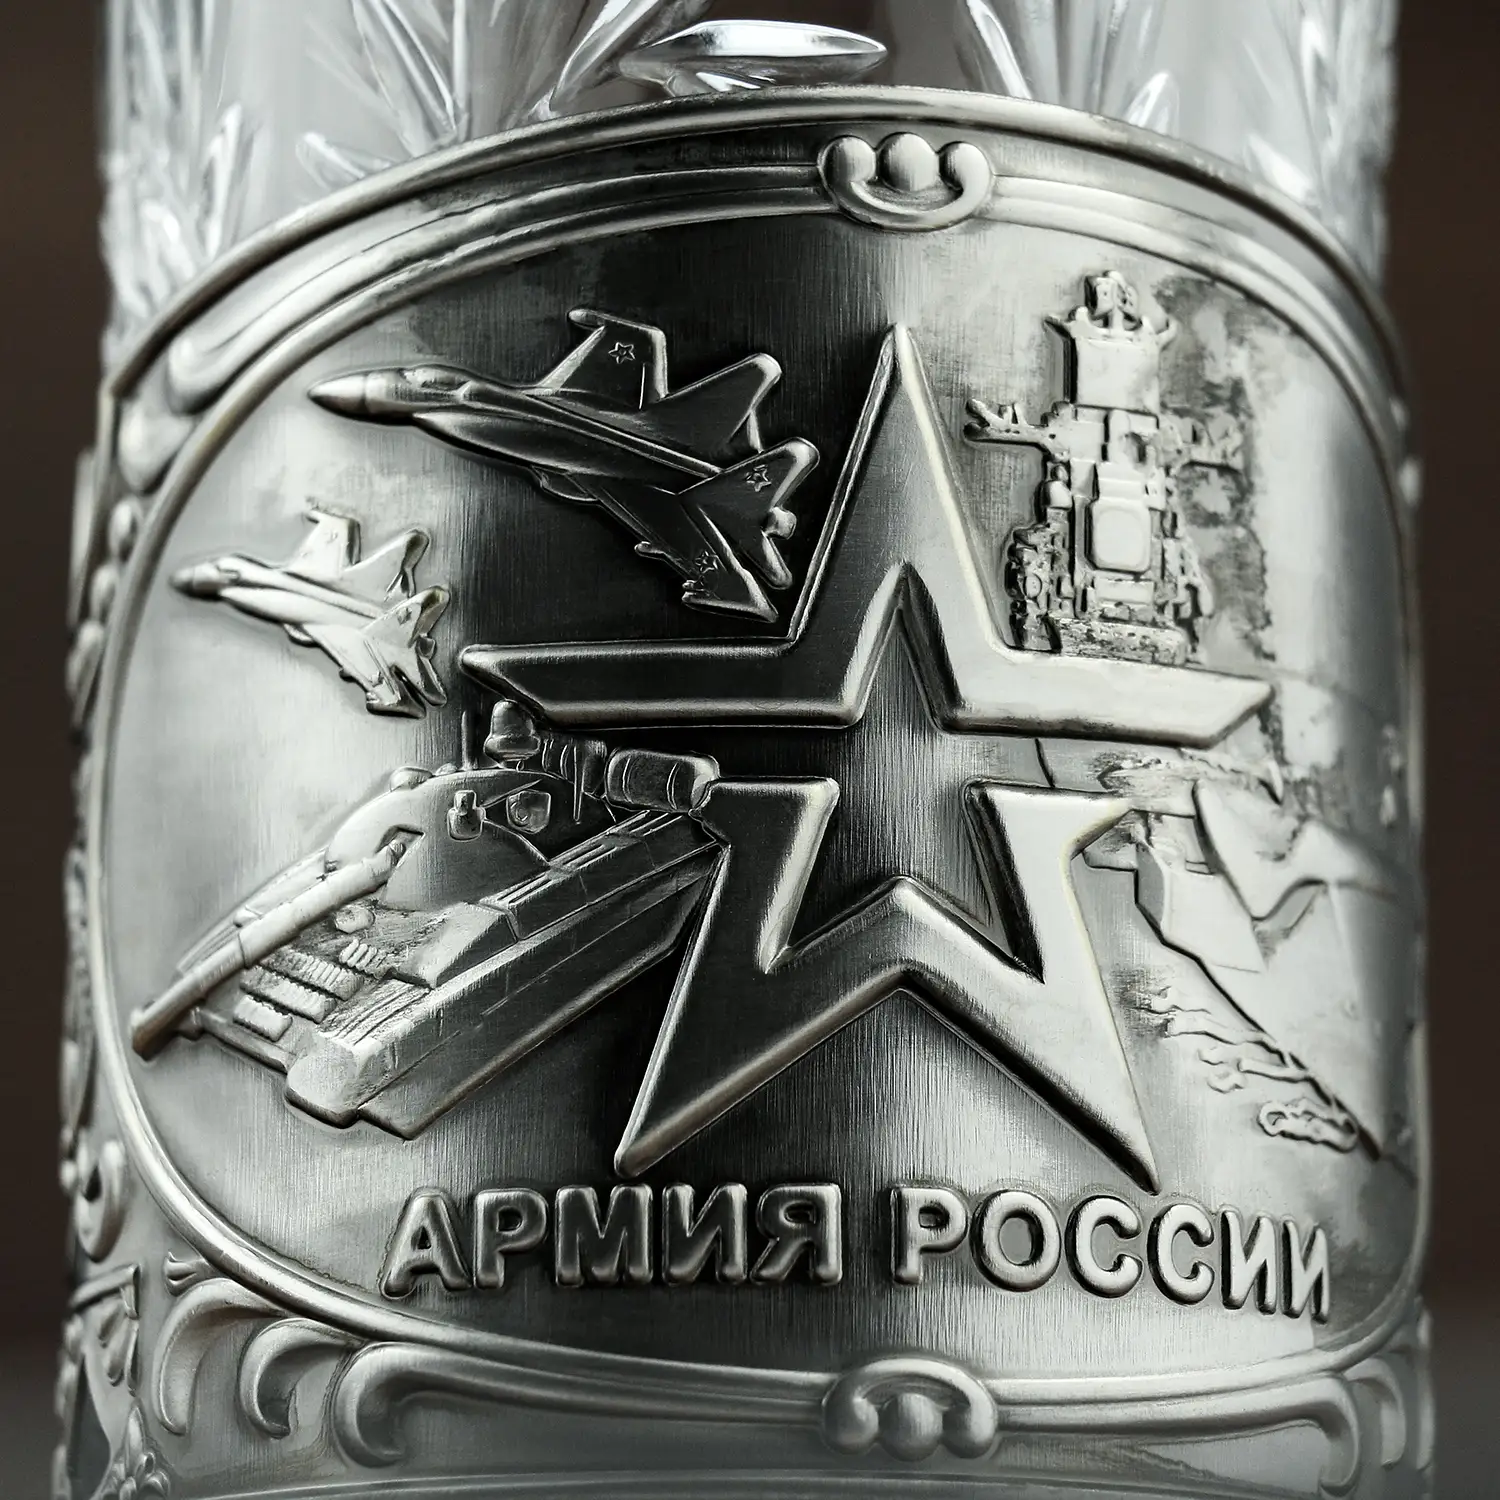 Набор для чая "Армия" никелированный  с чернением с открыткой и значком "Вооруженные силы"